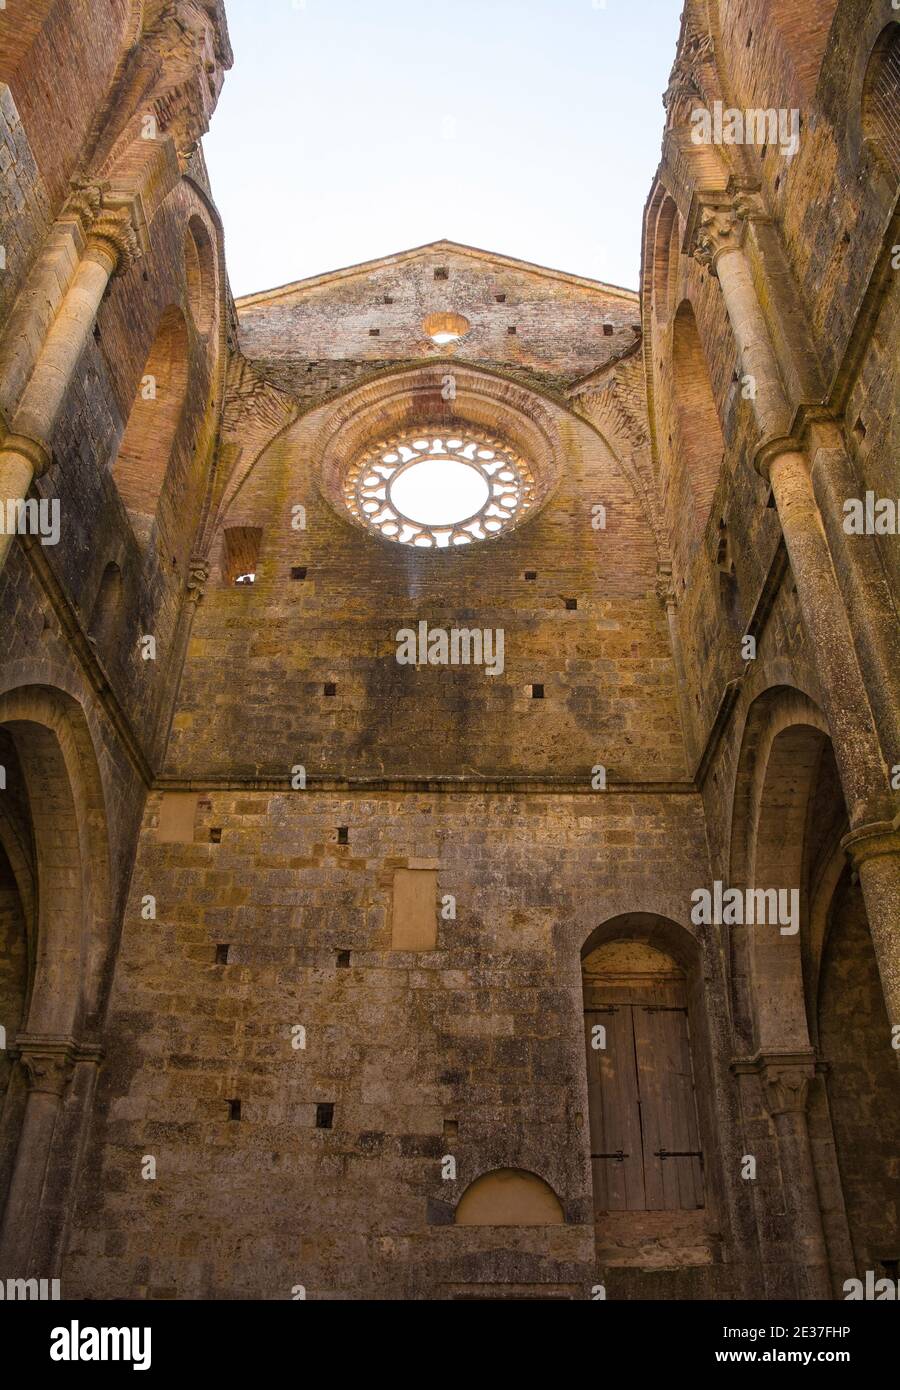 Chiusdino, Italien - 7. September 2020. Das große runde Rosenfenster in den Resten der dachlosen Abtei San Galgano in der Provinz Siena, Toskana Stockfoto